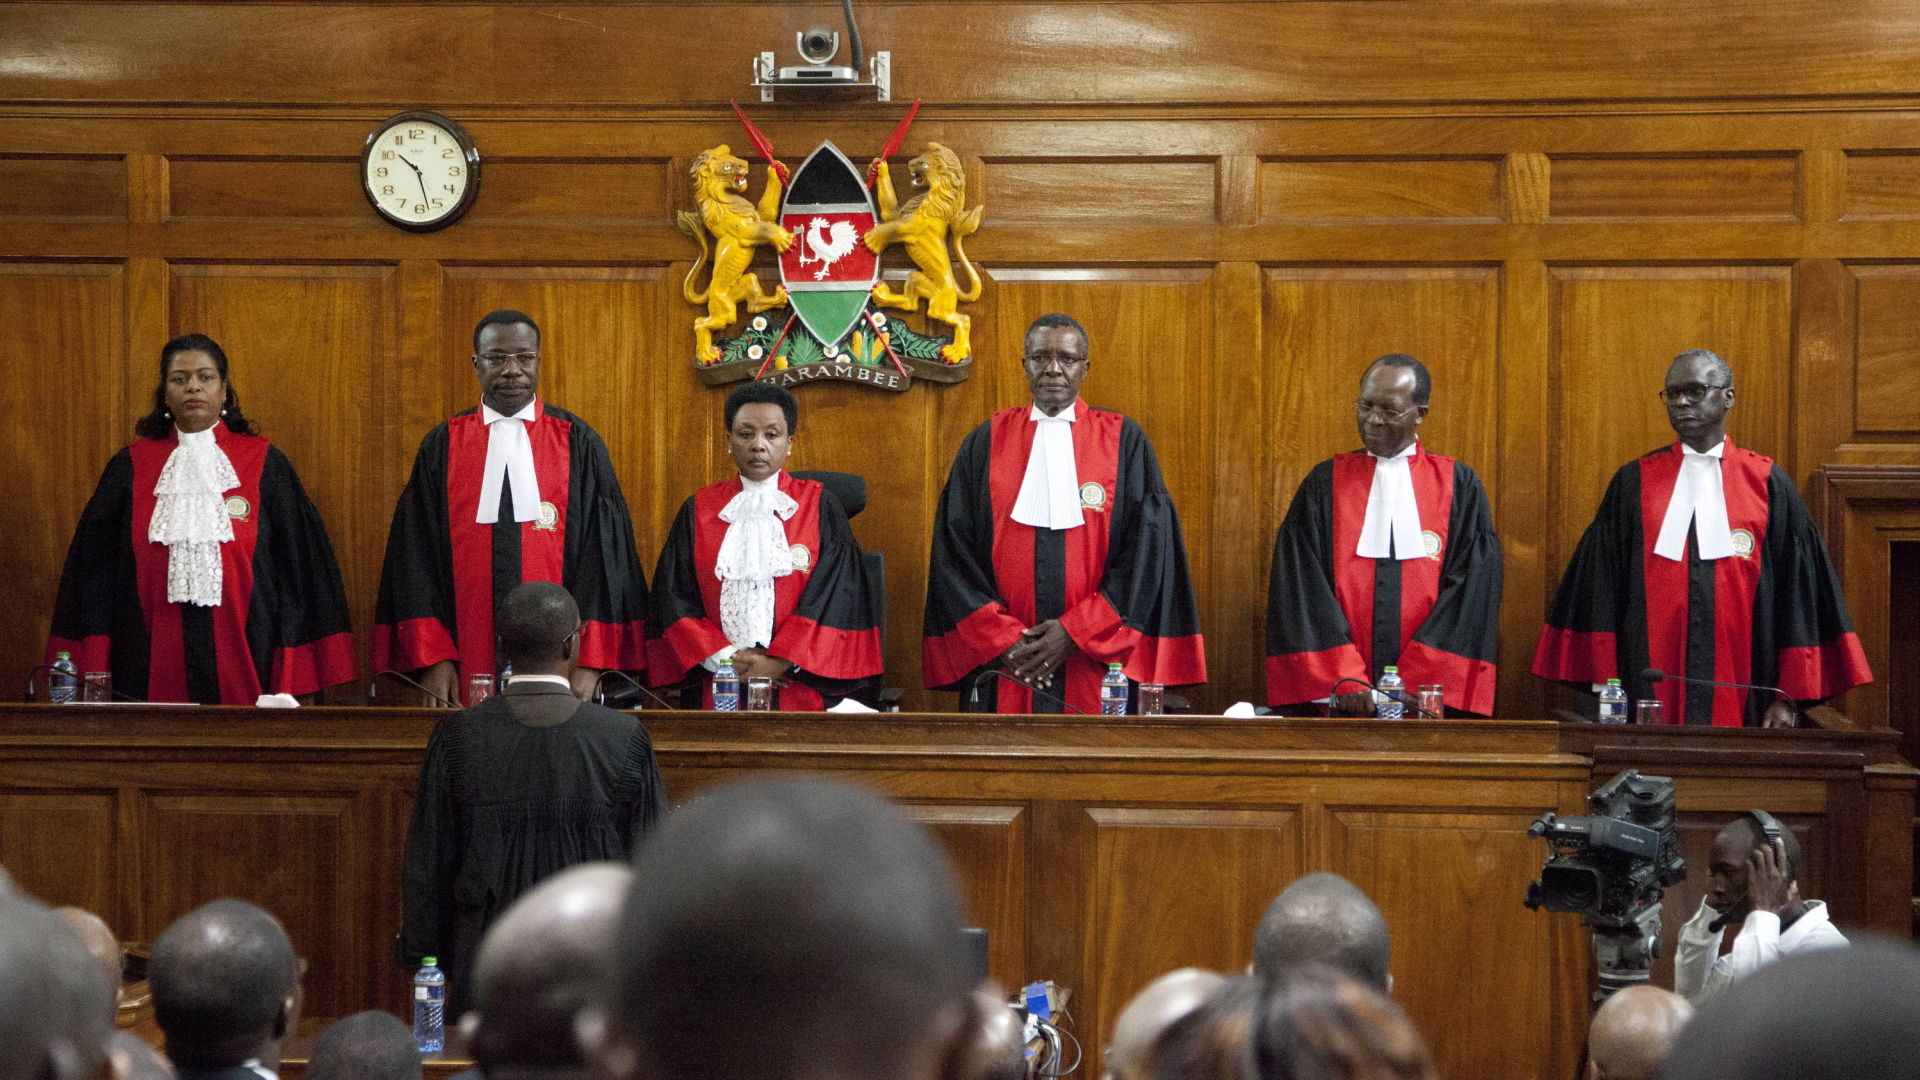 Die Richter des obersten Gerichts in Kenia stehen hinter der Richterbank